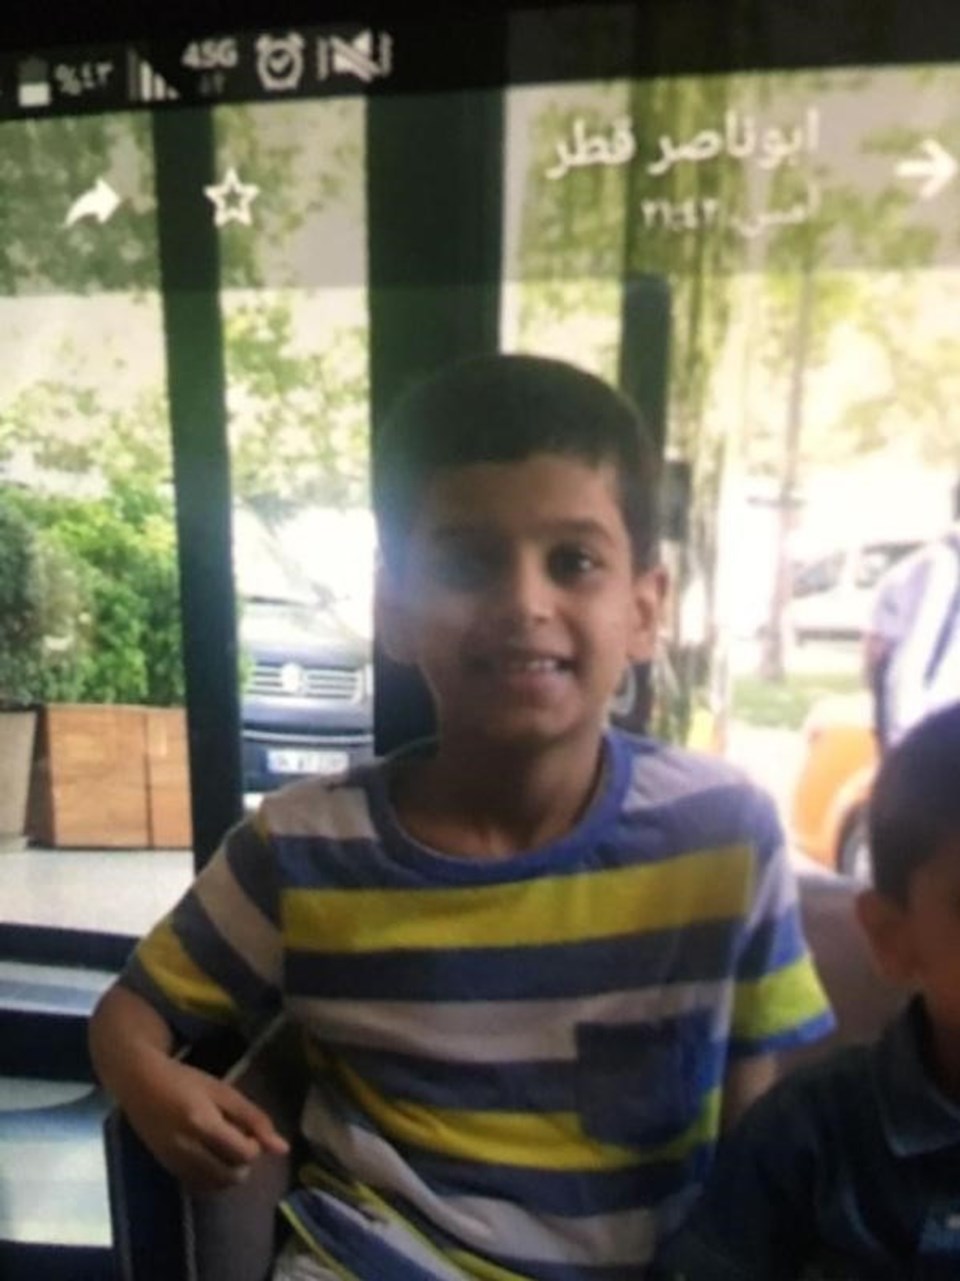 Uludağ'da kaybolan 9 yaşındaki çocuk 18 saat sonra bulundu - 1